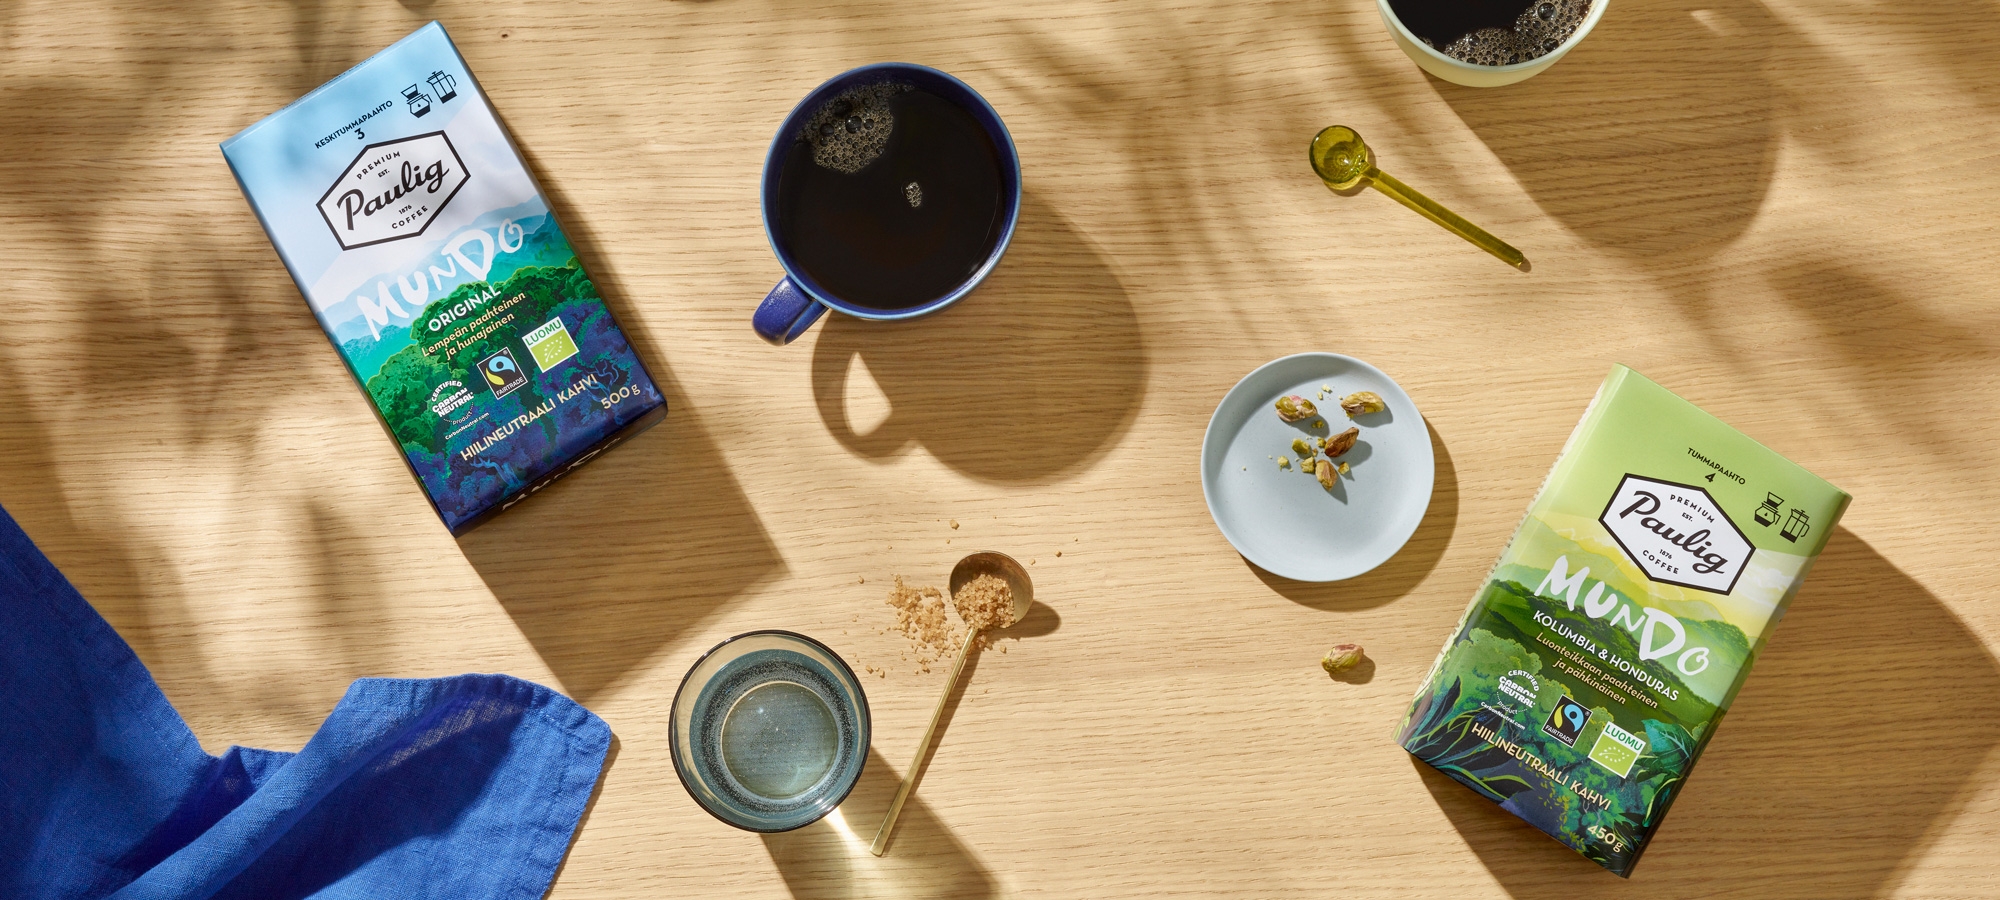 Paulig Mundo -kahvipakkaukset pöydällä hunajan ja lusikoiden kanssa.